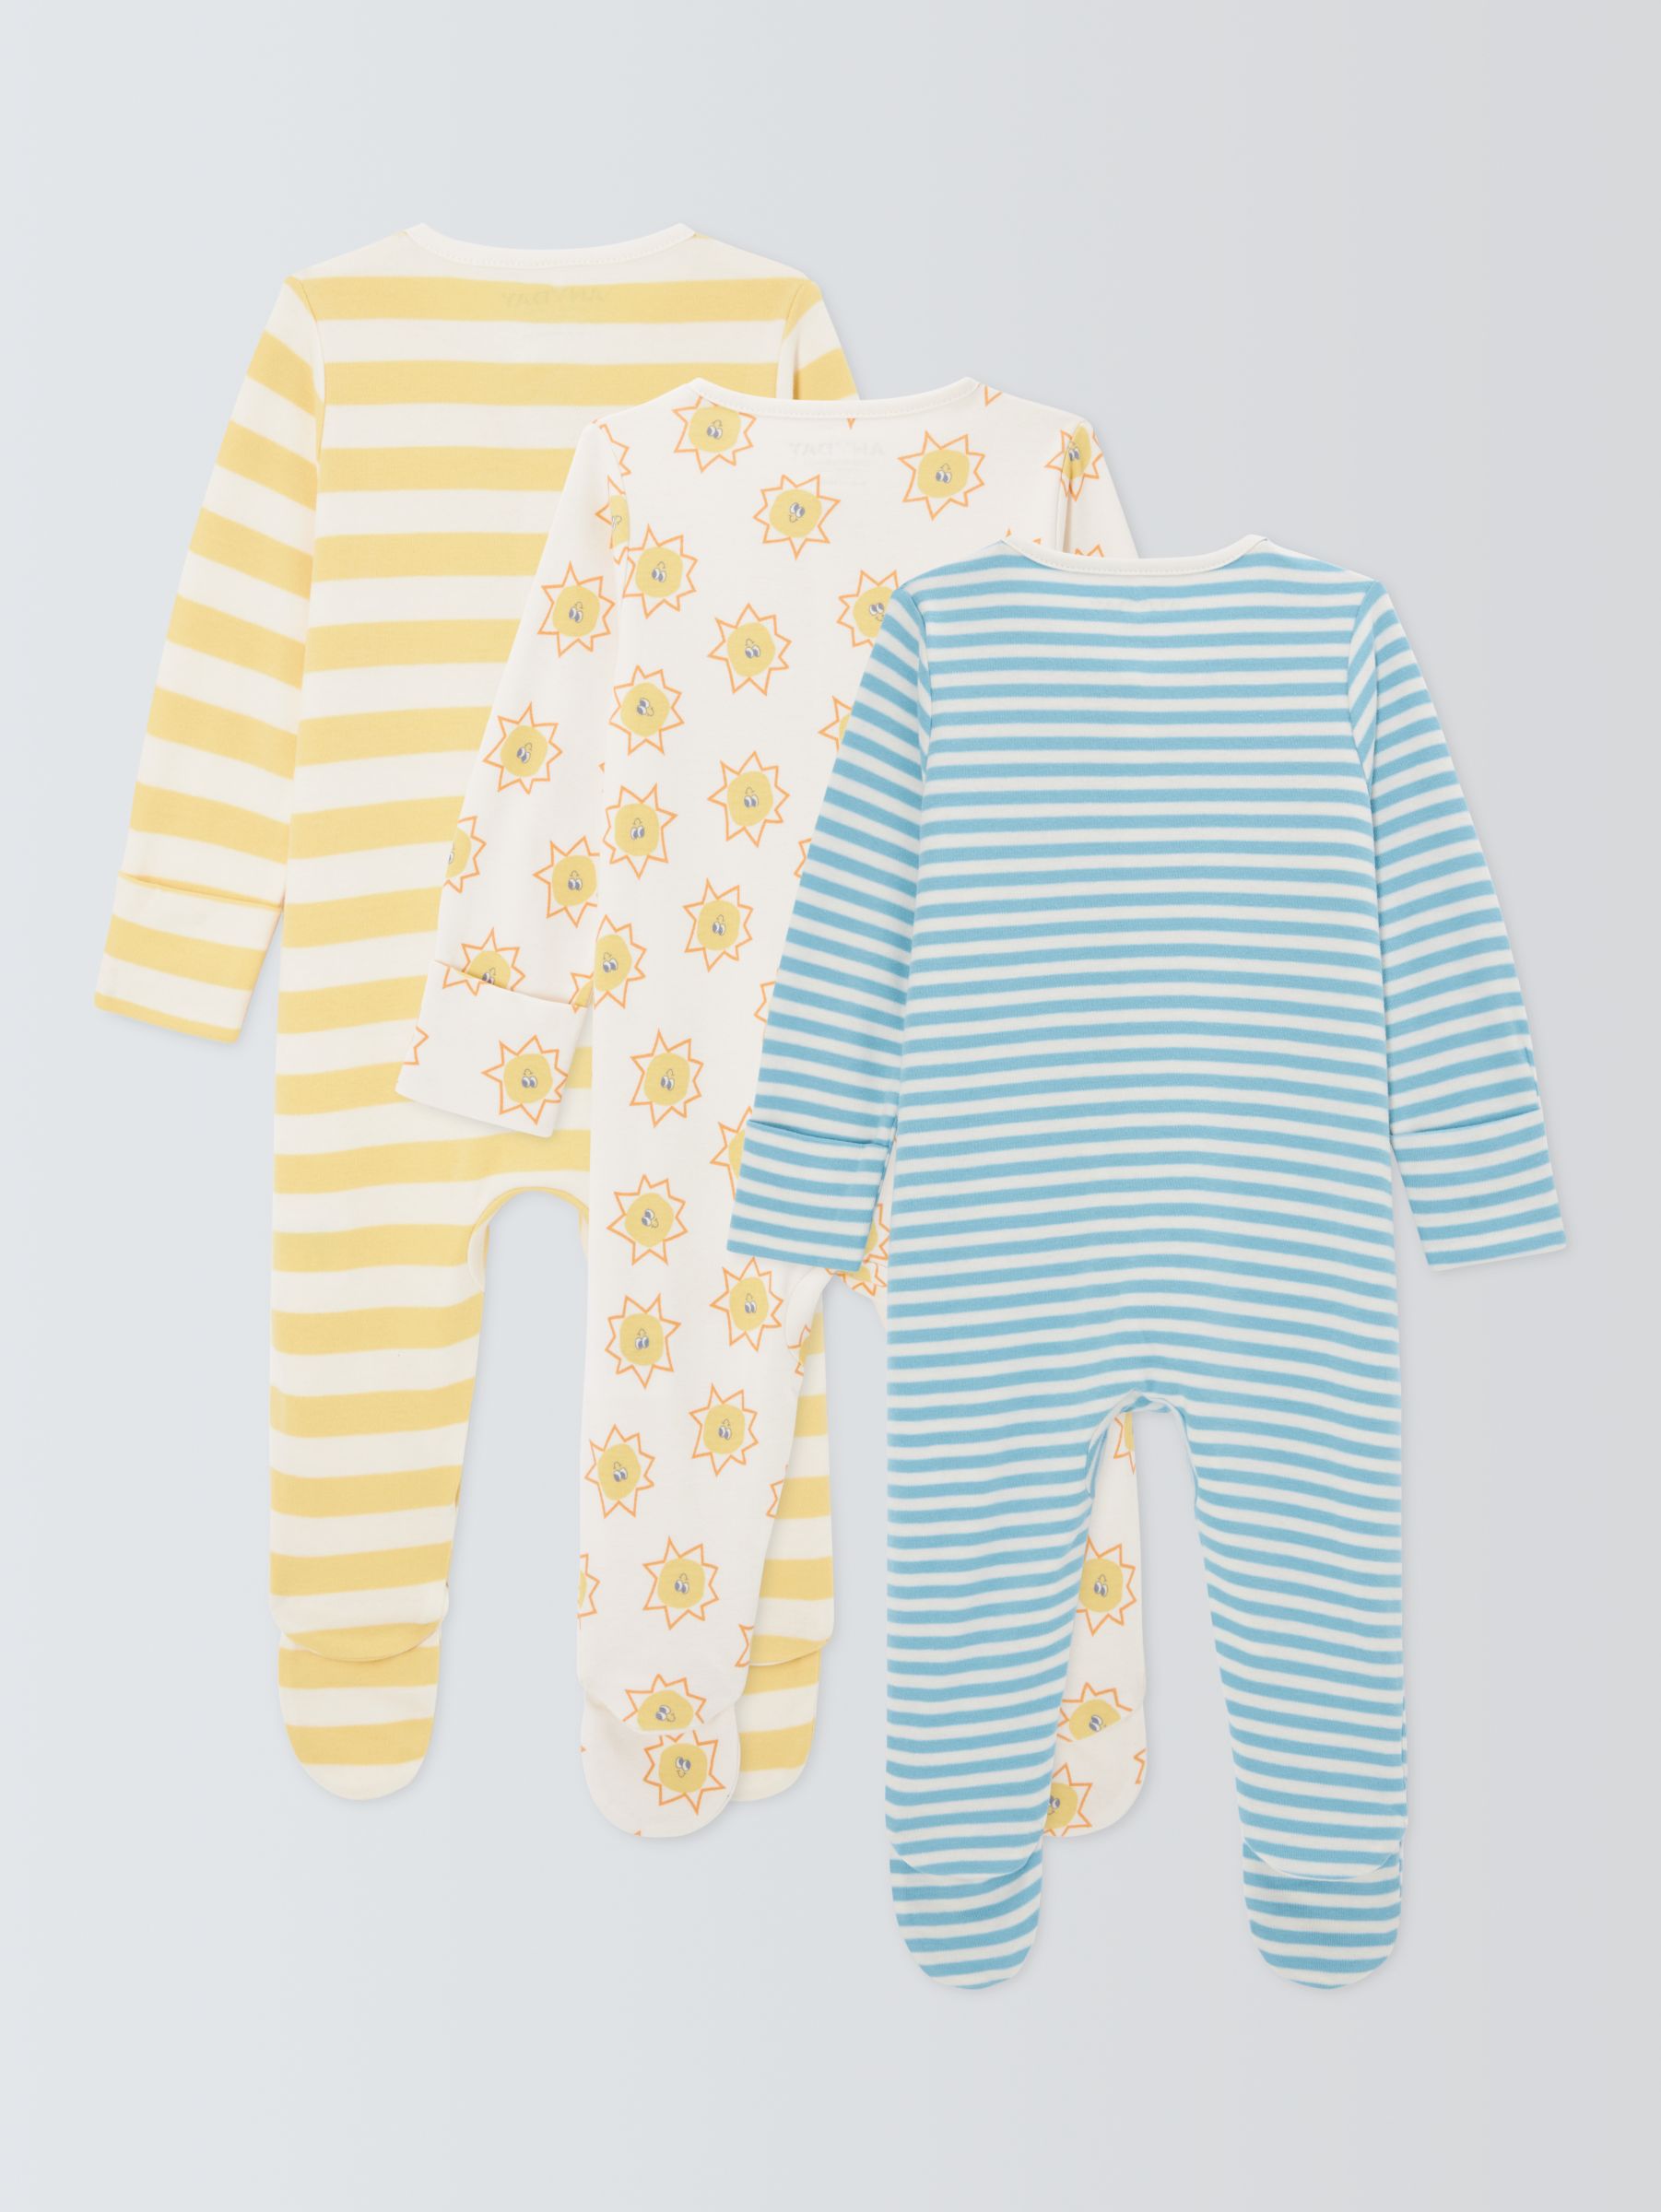 Buy John Lewis ANYDAY Baby Printed Sleepsuit, Pack of 3, Multi Online at johnlewis.com